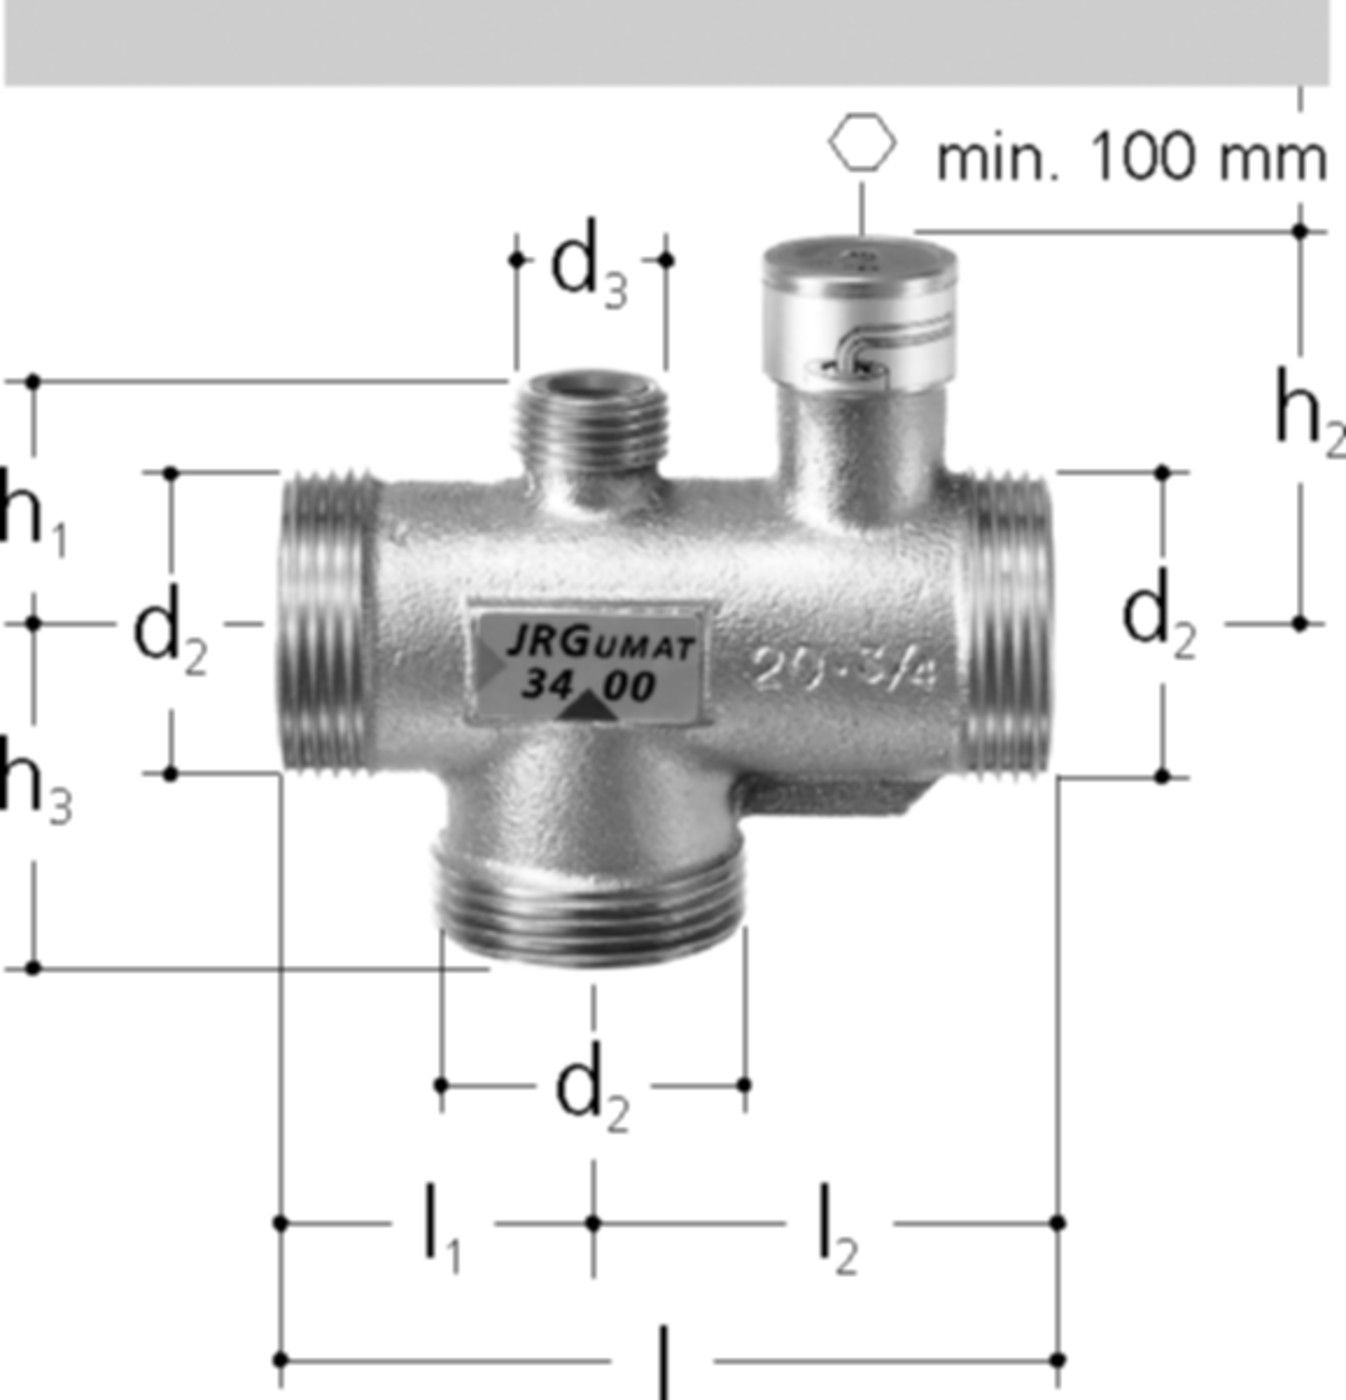 JRGUMAT Thermomischer PN 10 2" DN 50 55°C 3400.966 - JRG Armaturen